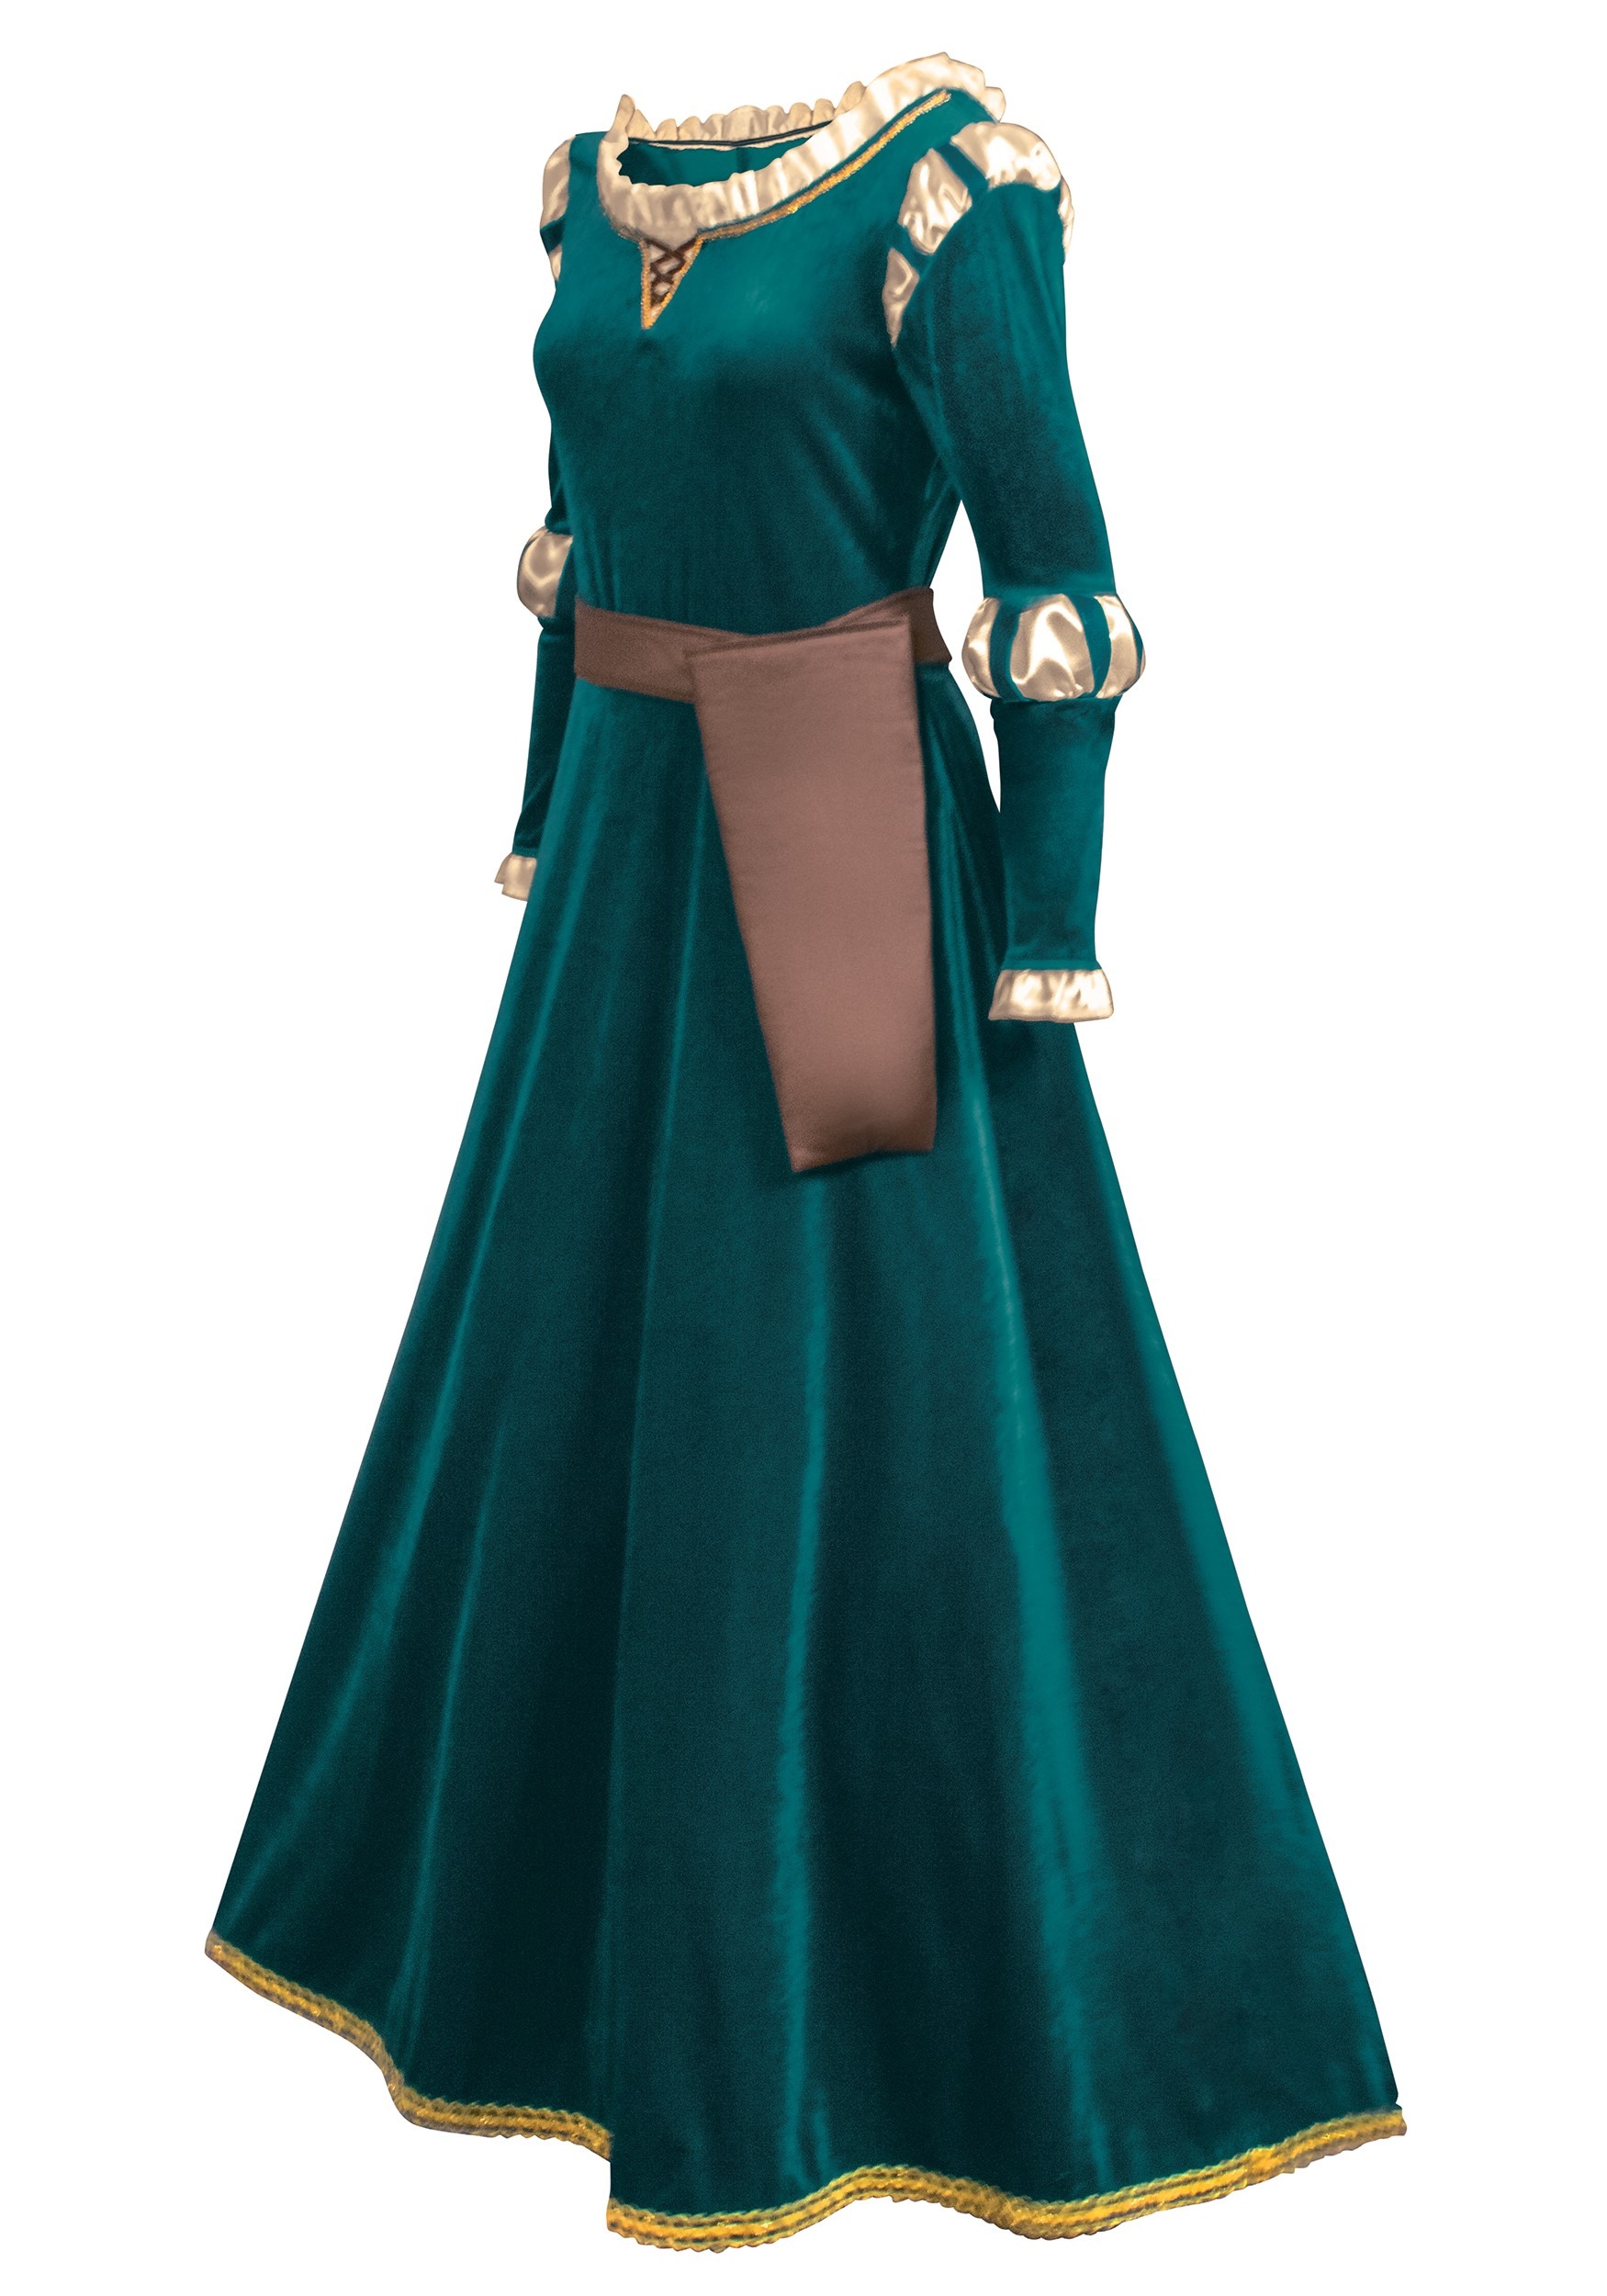 Brave Women's Disney Merida Fancy Dress Costume , Women's Disney Fancy Dress Costumes